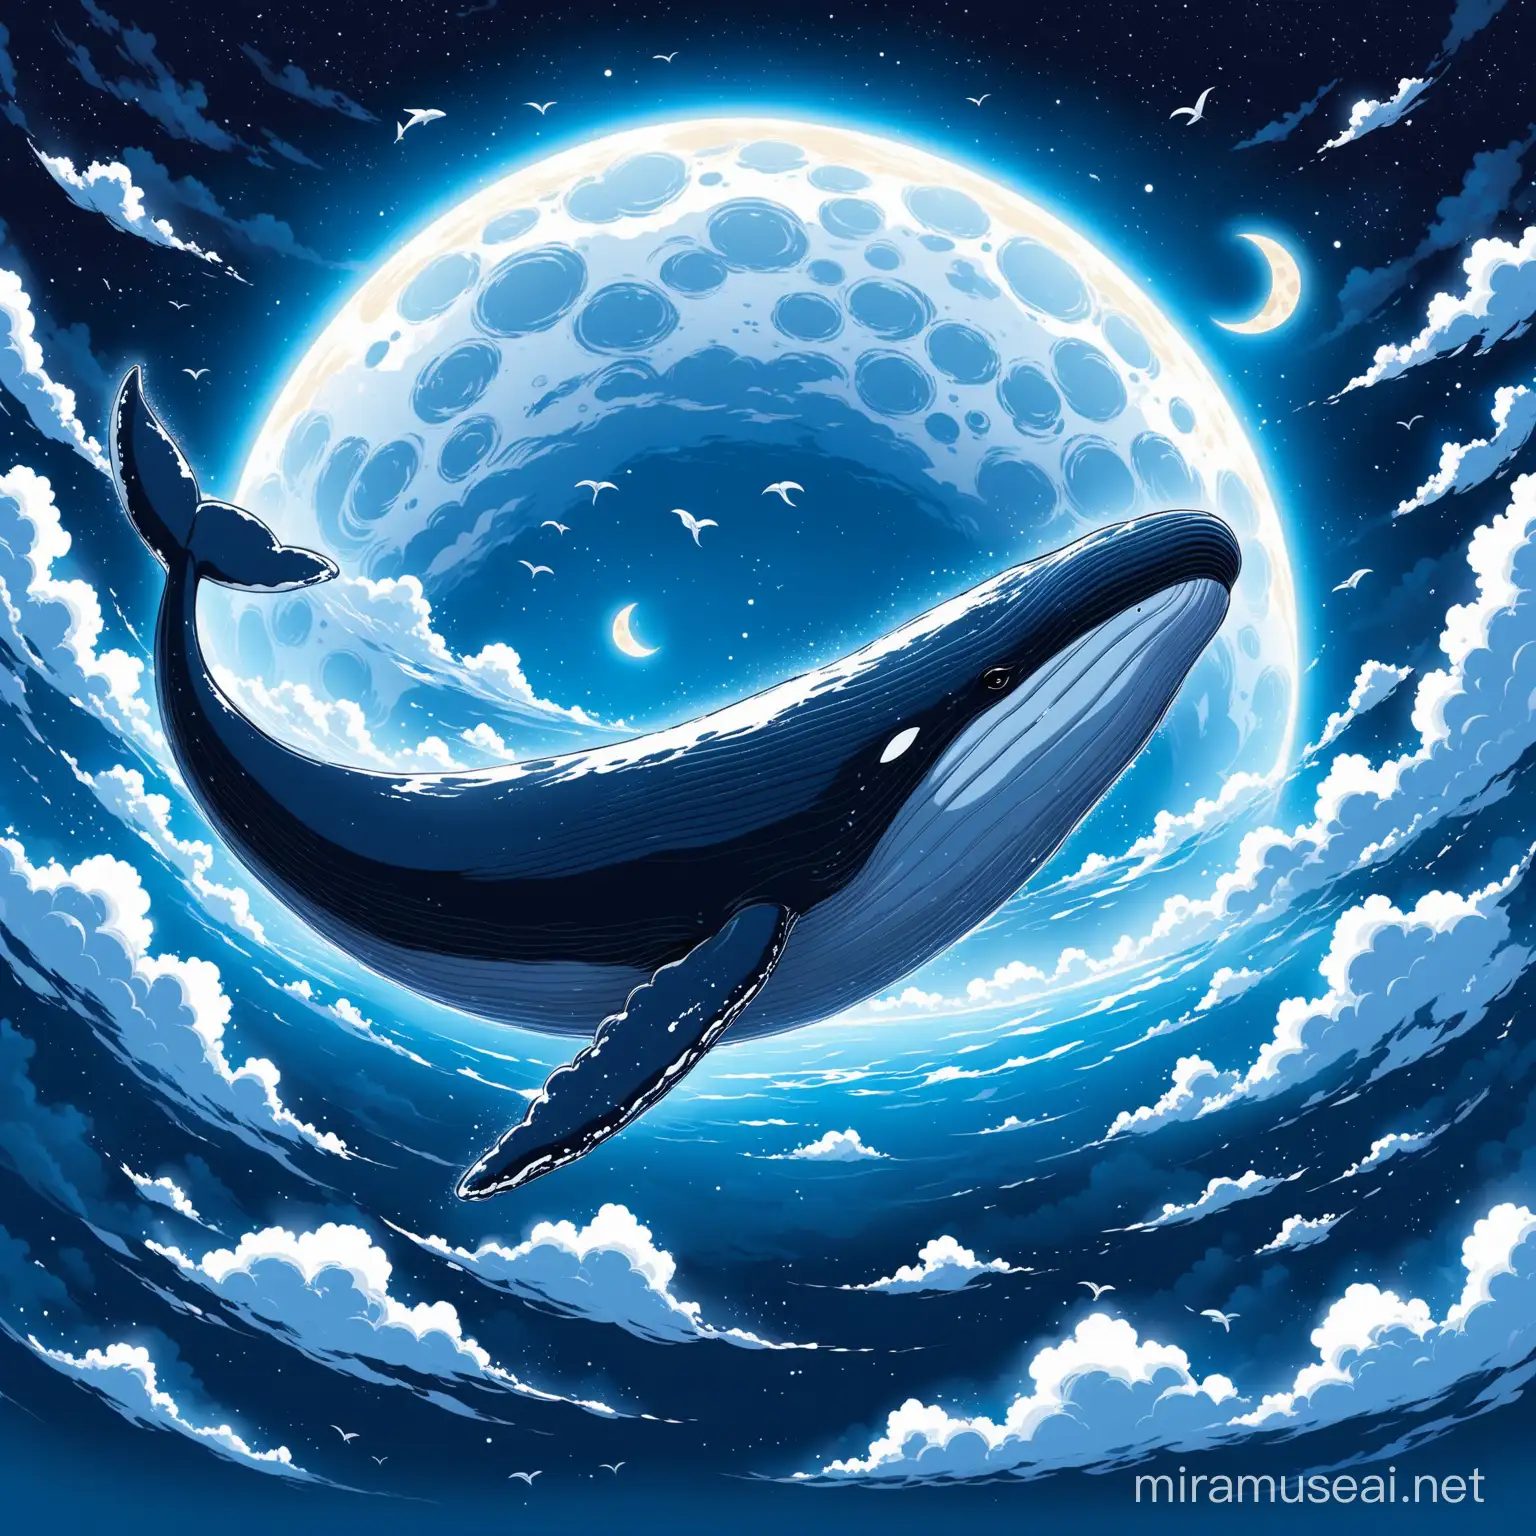 Una ballena en la luna alredocon nubes 
 
